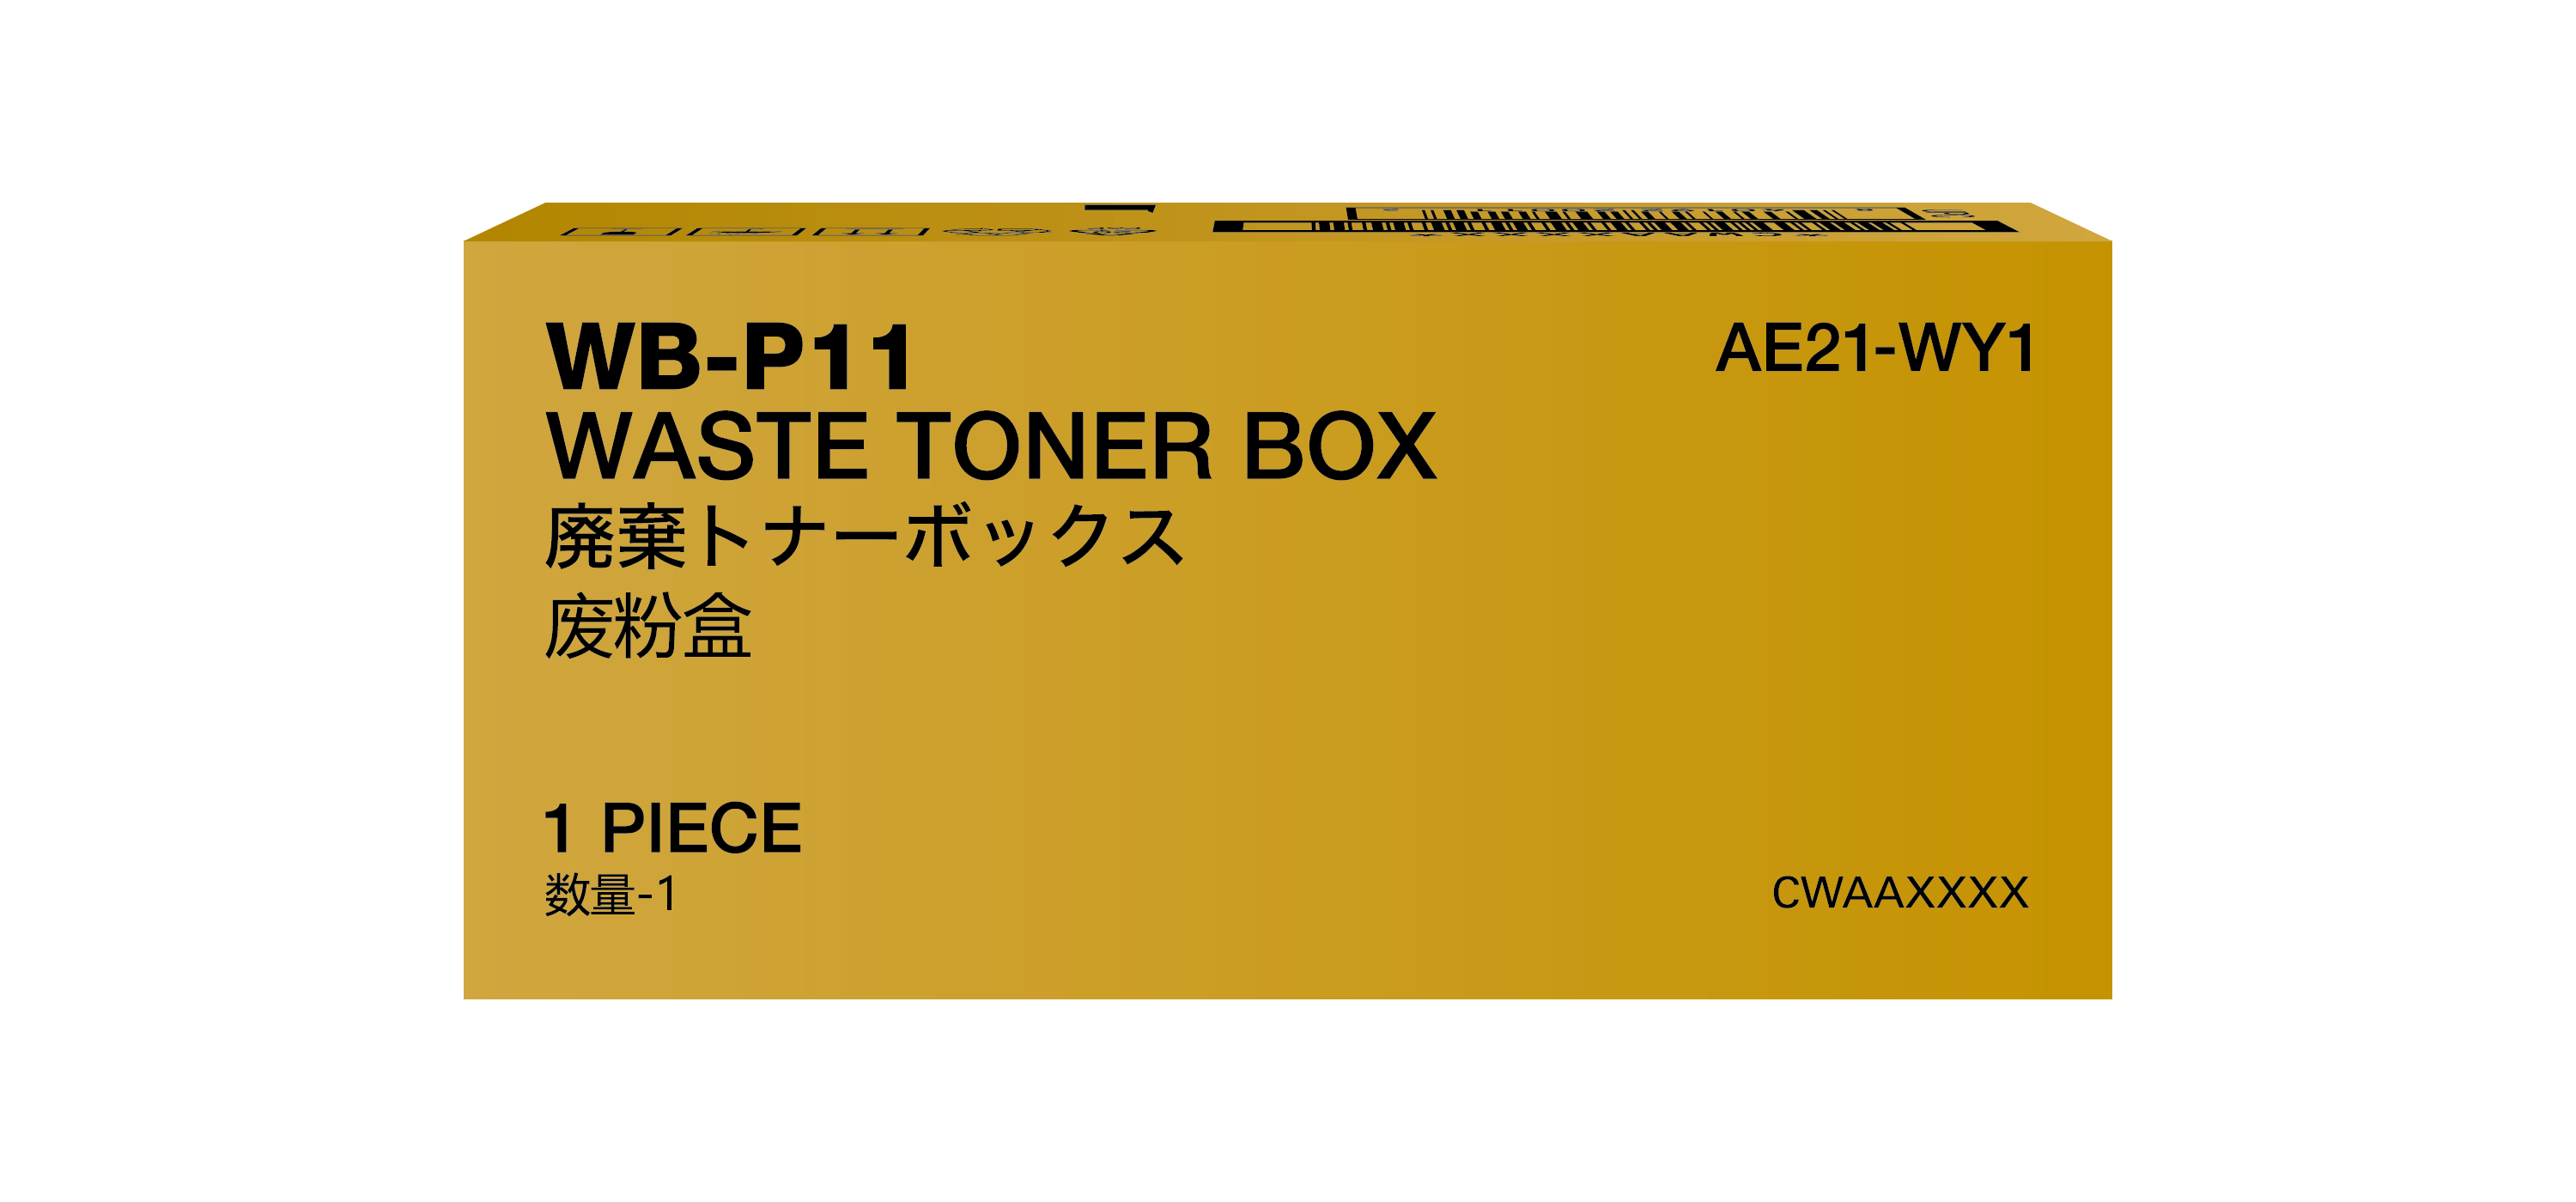 Toner Waste Box